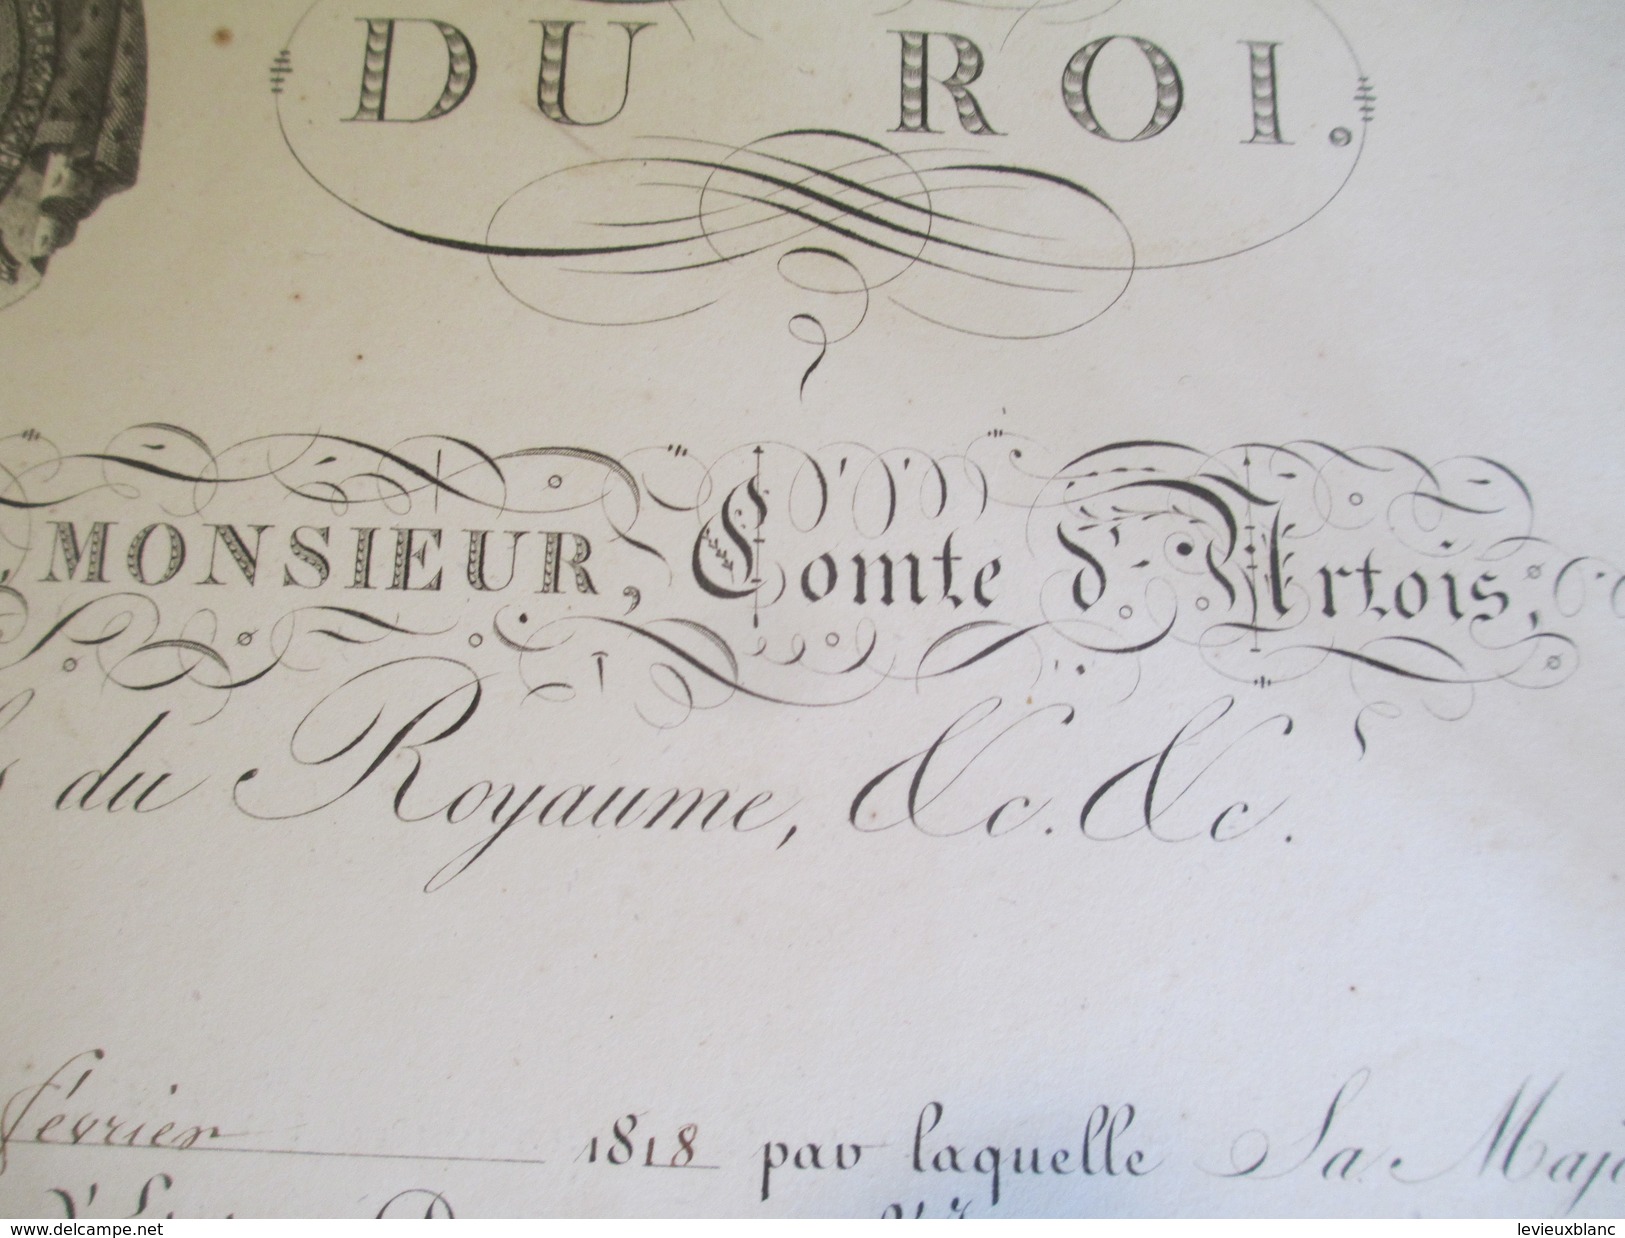 Brevet /Autographe/Charles Philippe De France,Comte D'Artois/Épernay Marne/Nomination/Hilaire/Lt Colonel/1818     DIP209 - Diploma & School Reports